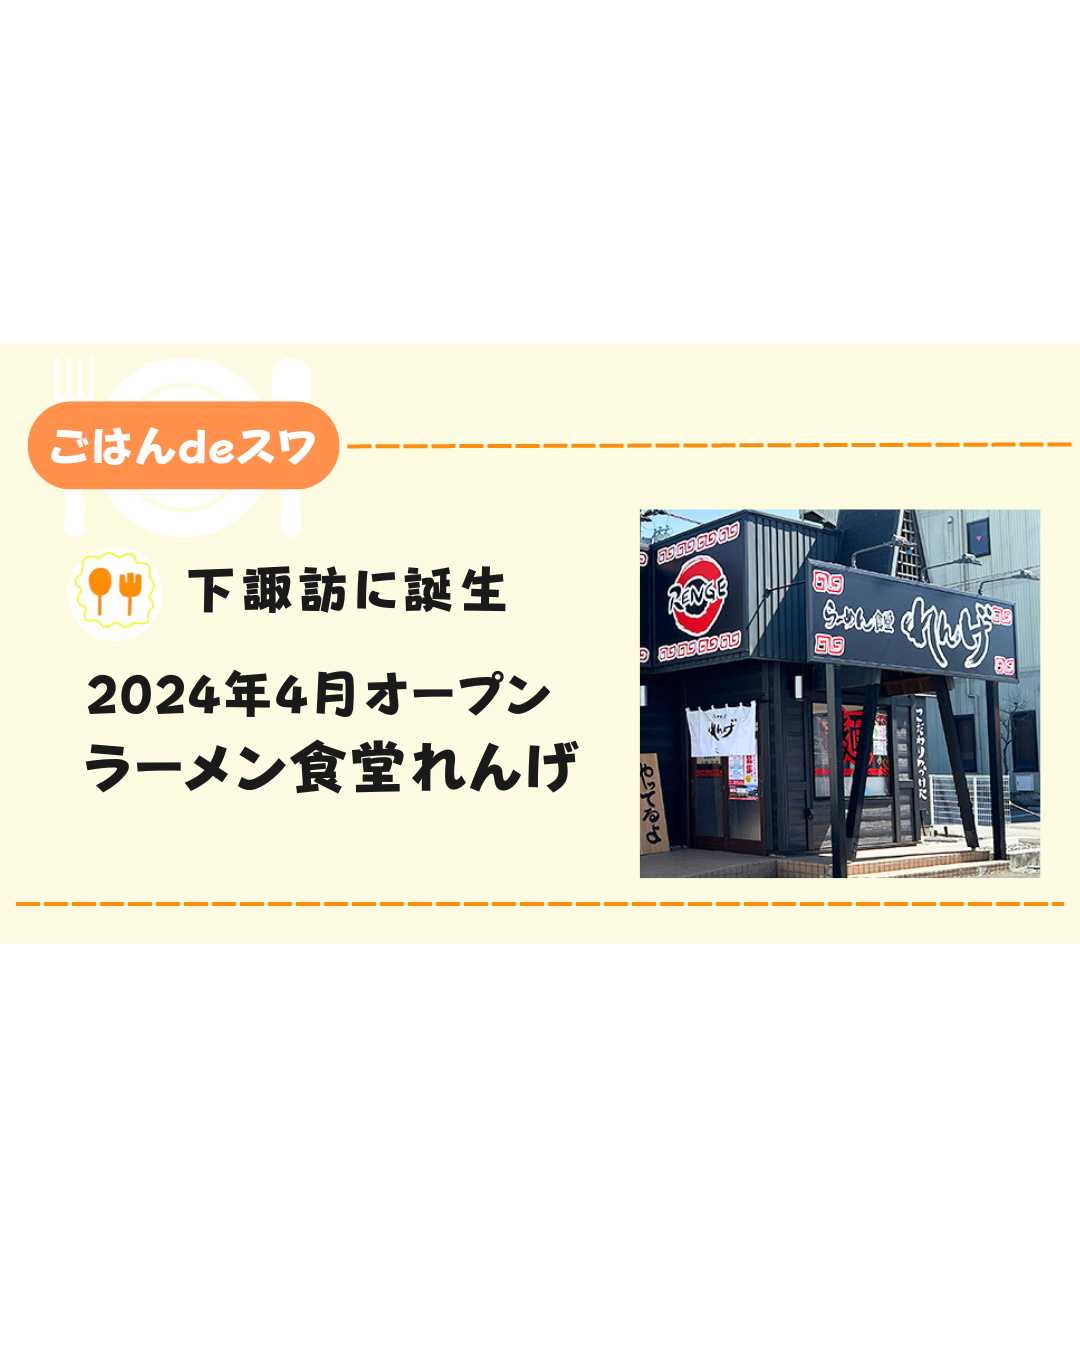 【4月上旬】諏訪市のいきなりステーキの跡地にラーメン食堂「れんげ」がオープン⁉︎